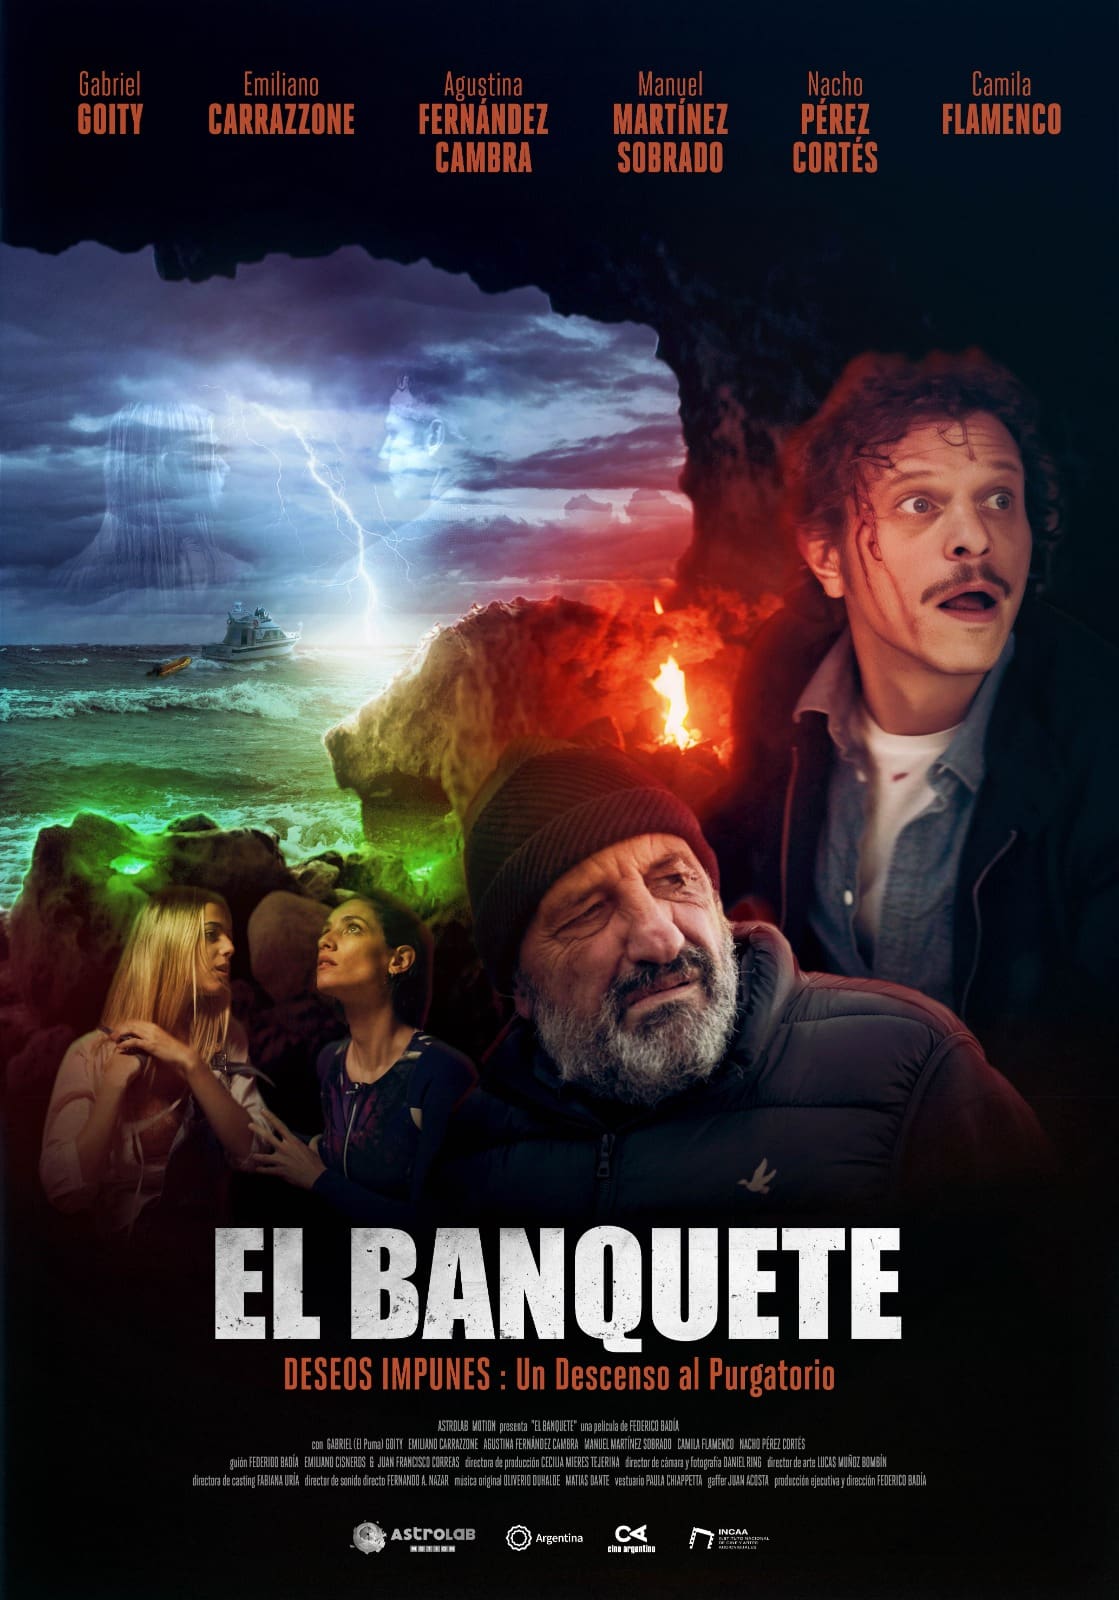 ¡El Banquete llega a Mar del Plata! Una emocionante comedia negra / thriller filmada en la ciudad